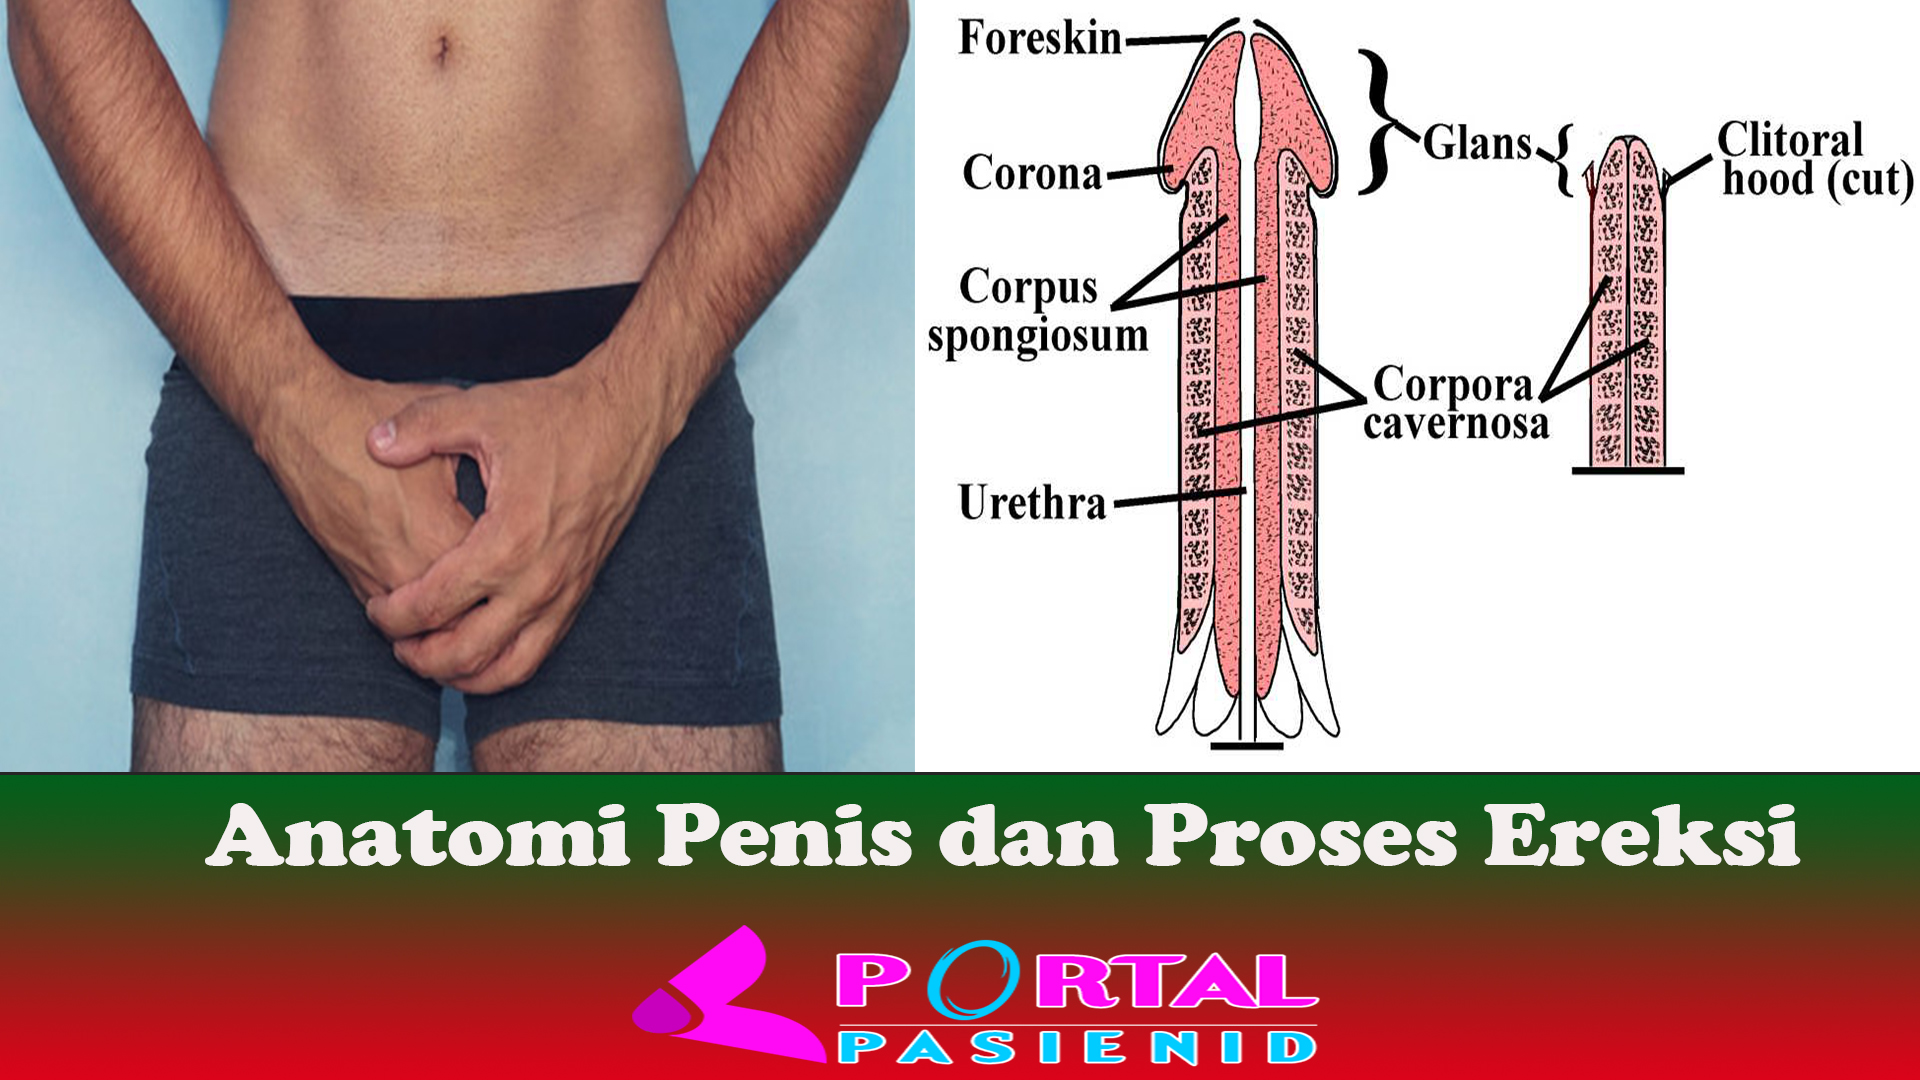 Anatomi Penis dan Proses Ereksi